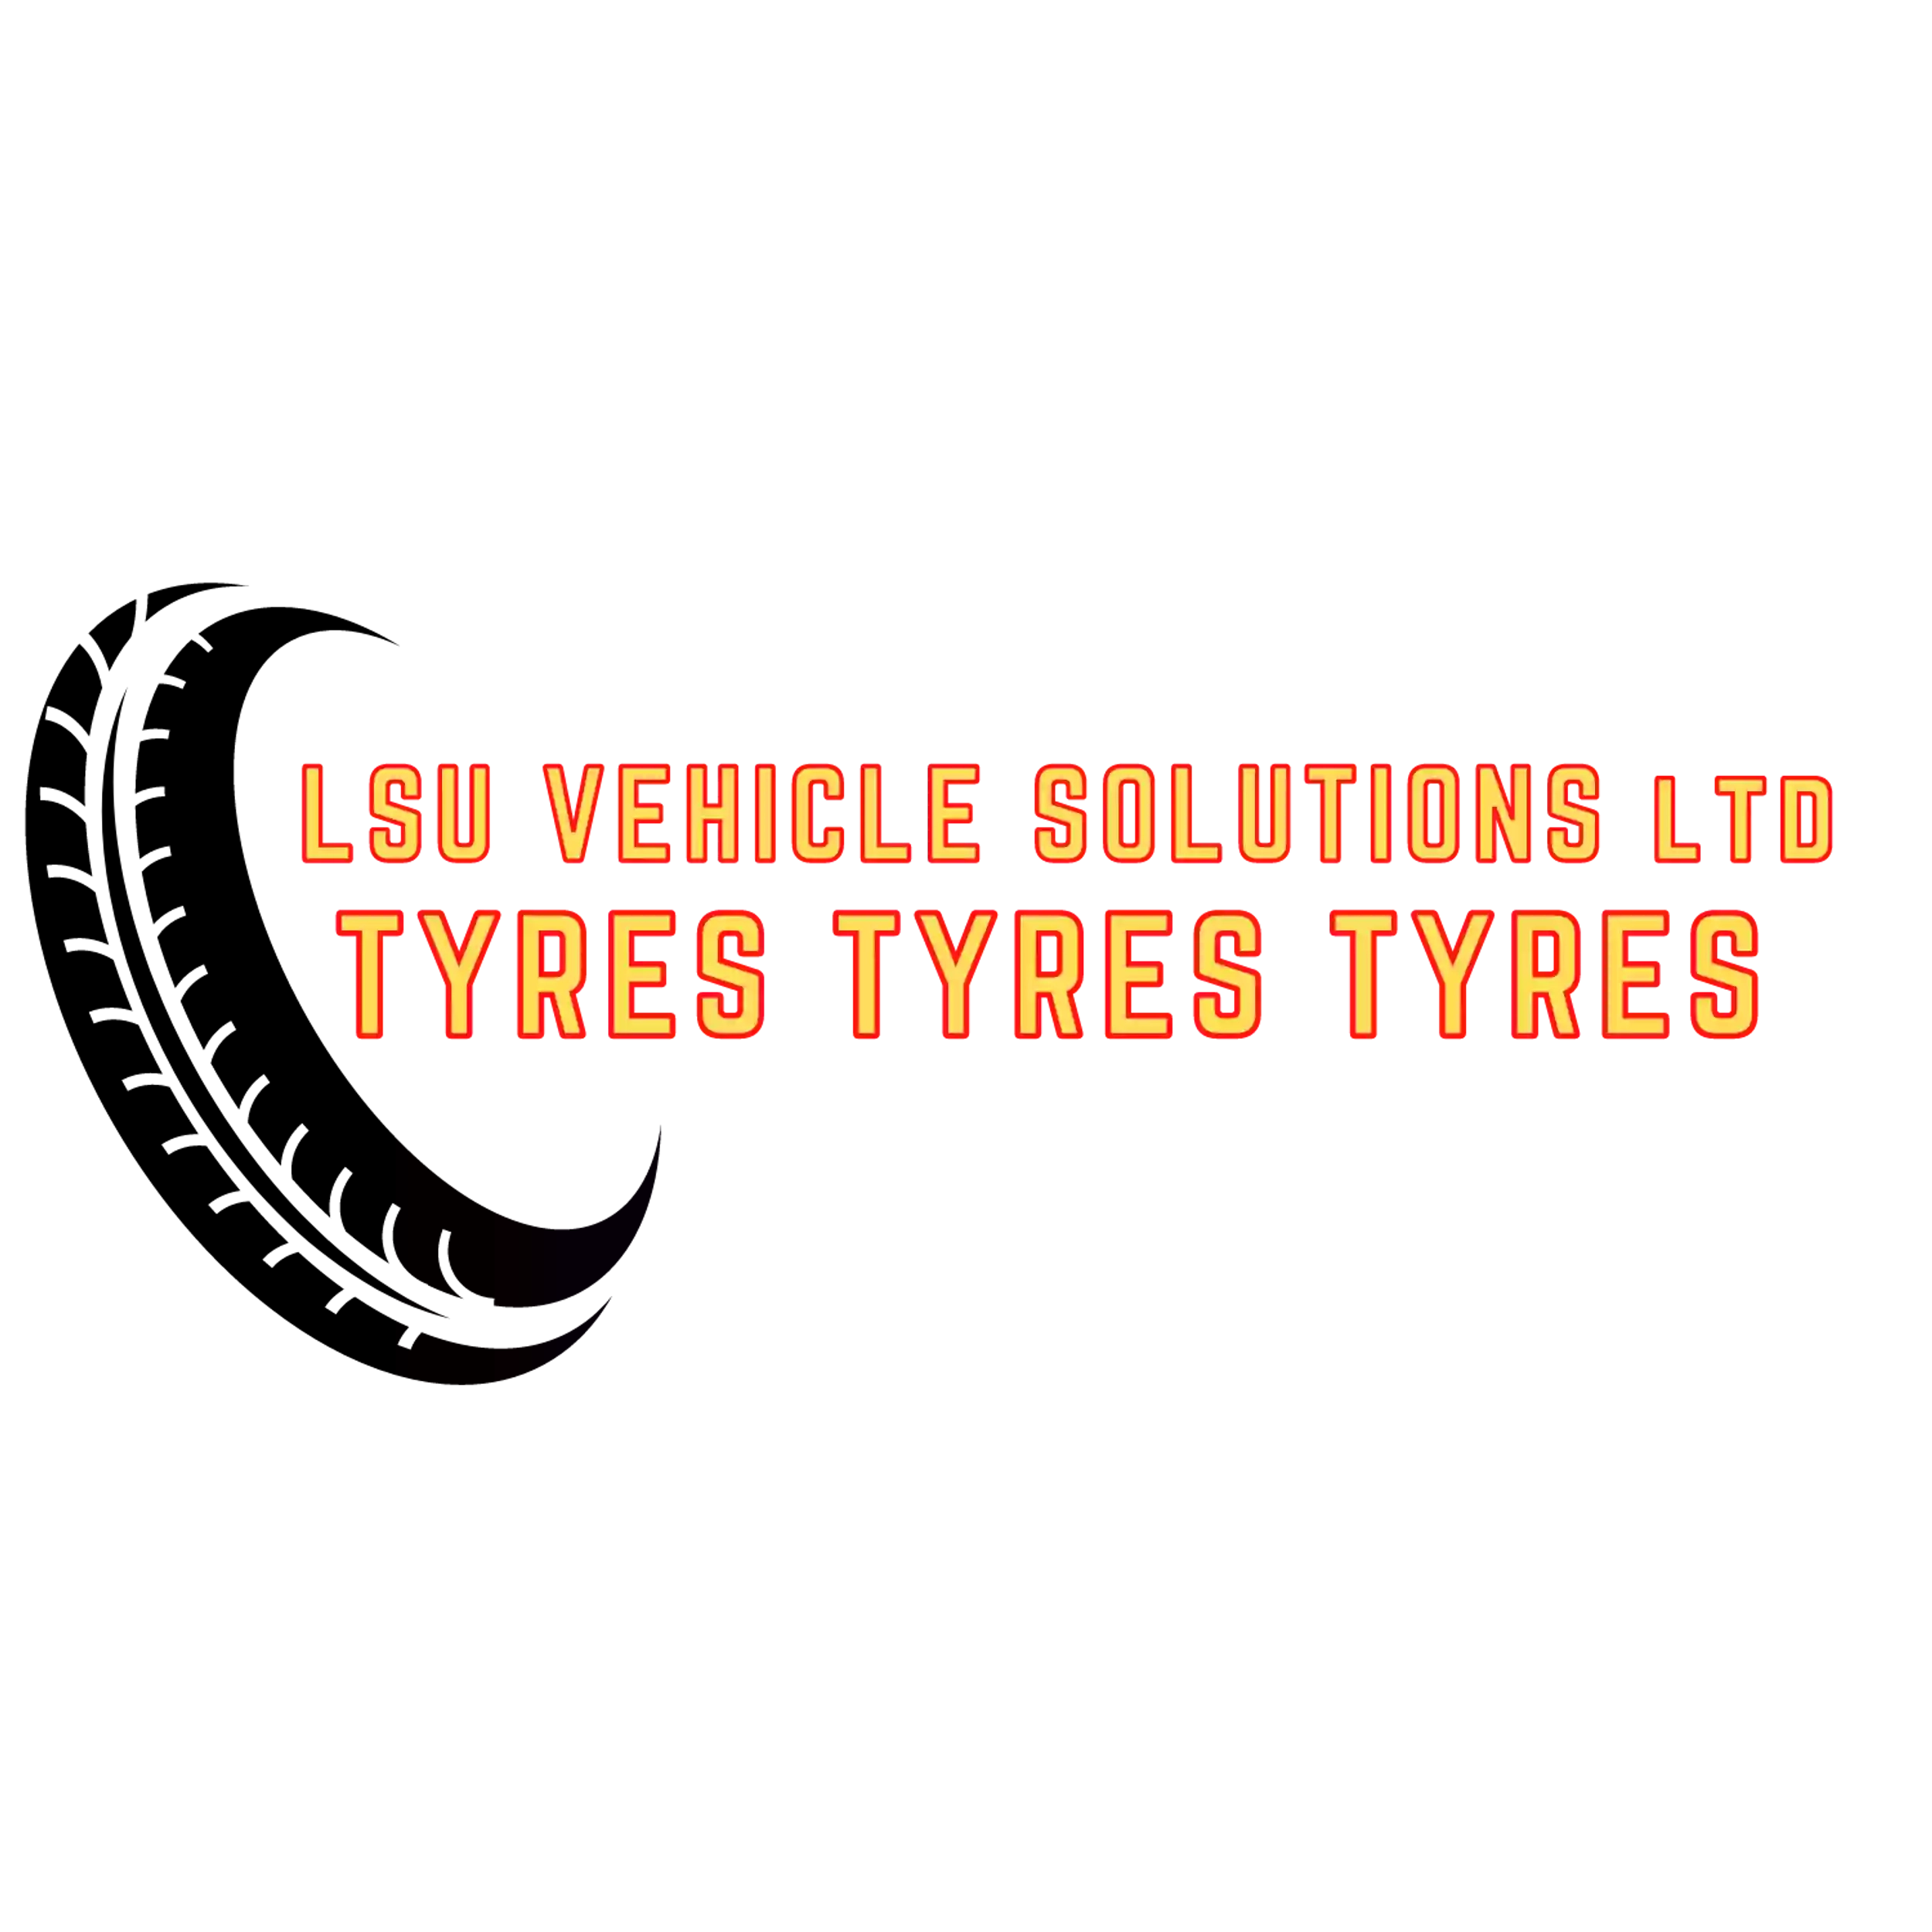 Tyres Tyres Tyres (Lsu Vehicle Solutions Ltd)